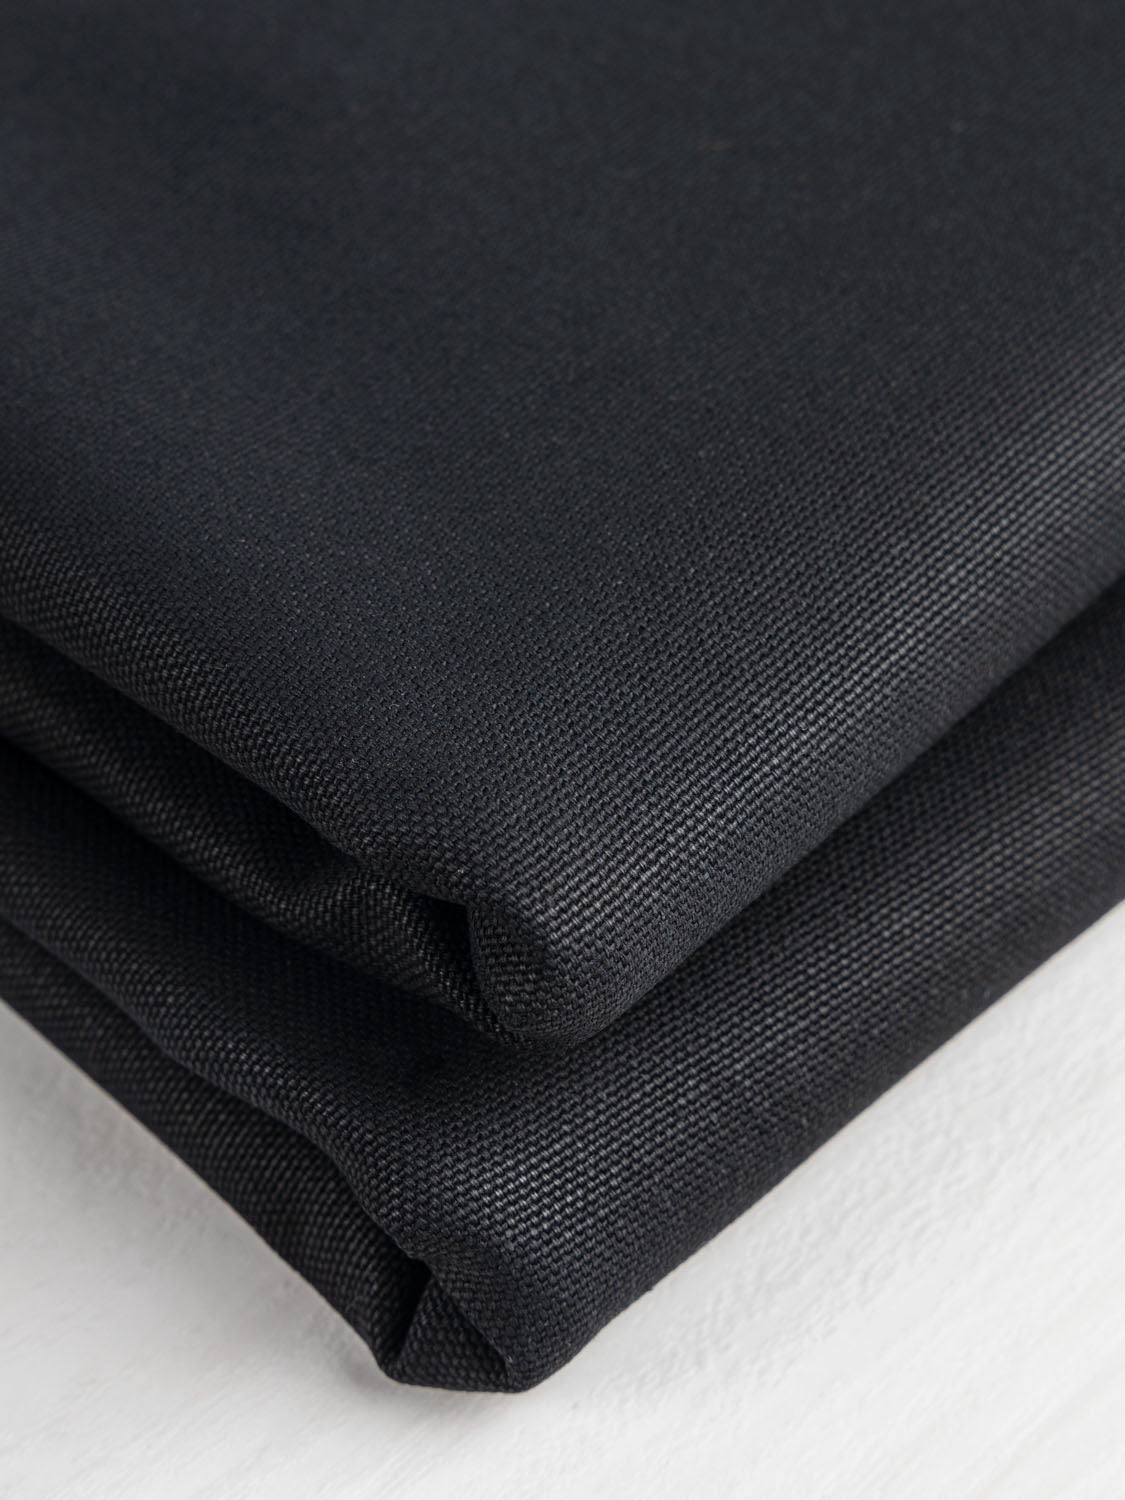 Canvas, Denim and Twill Fabric – Spool of Thread